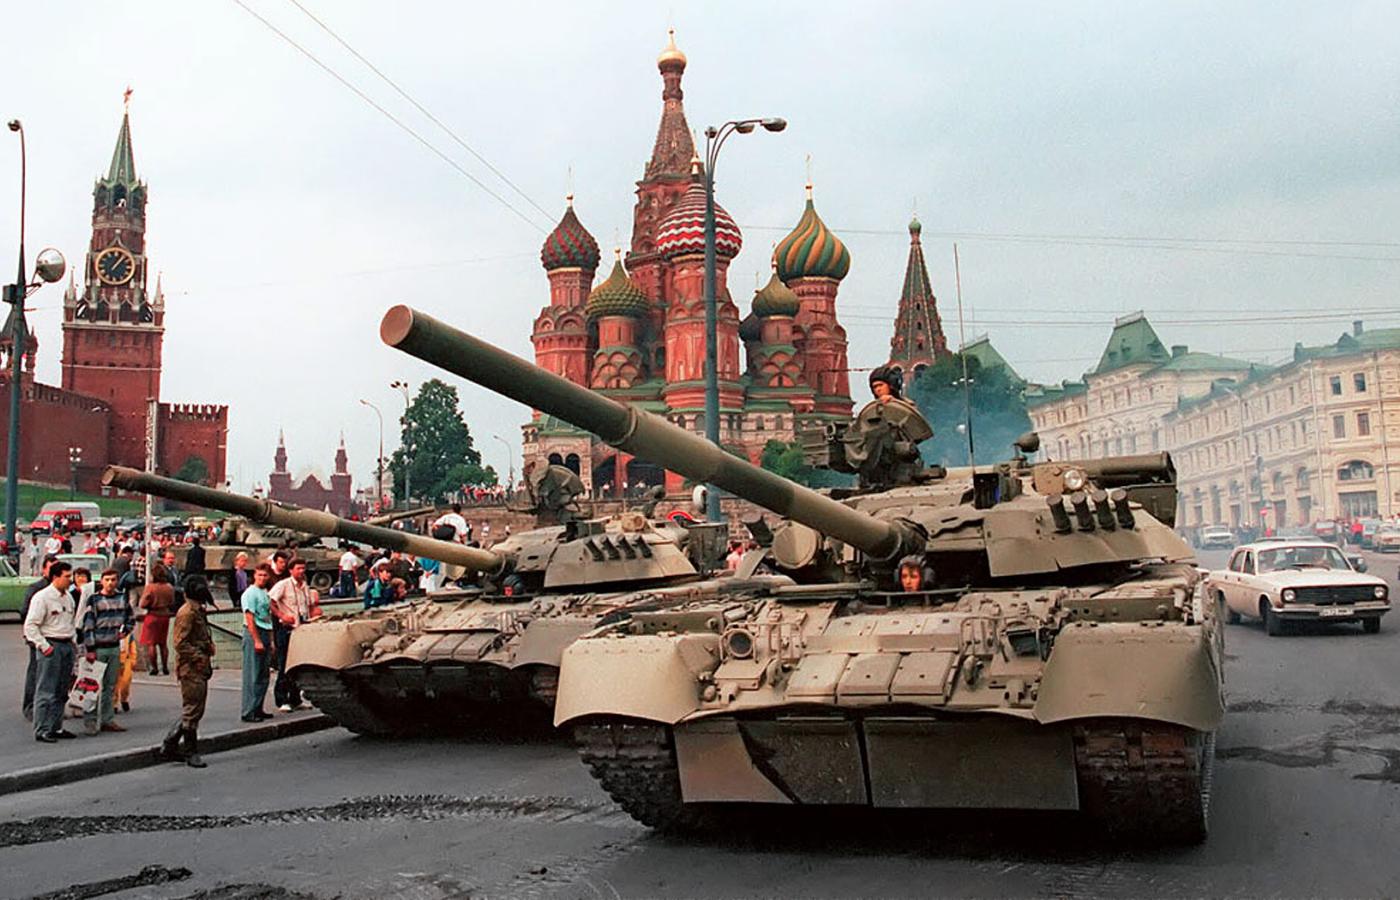 Czołgi mające wesprzeć pucz zostały wycofane z Moskwy już po dwóch dniach.